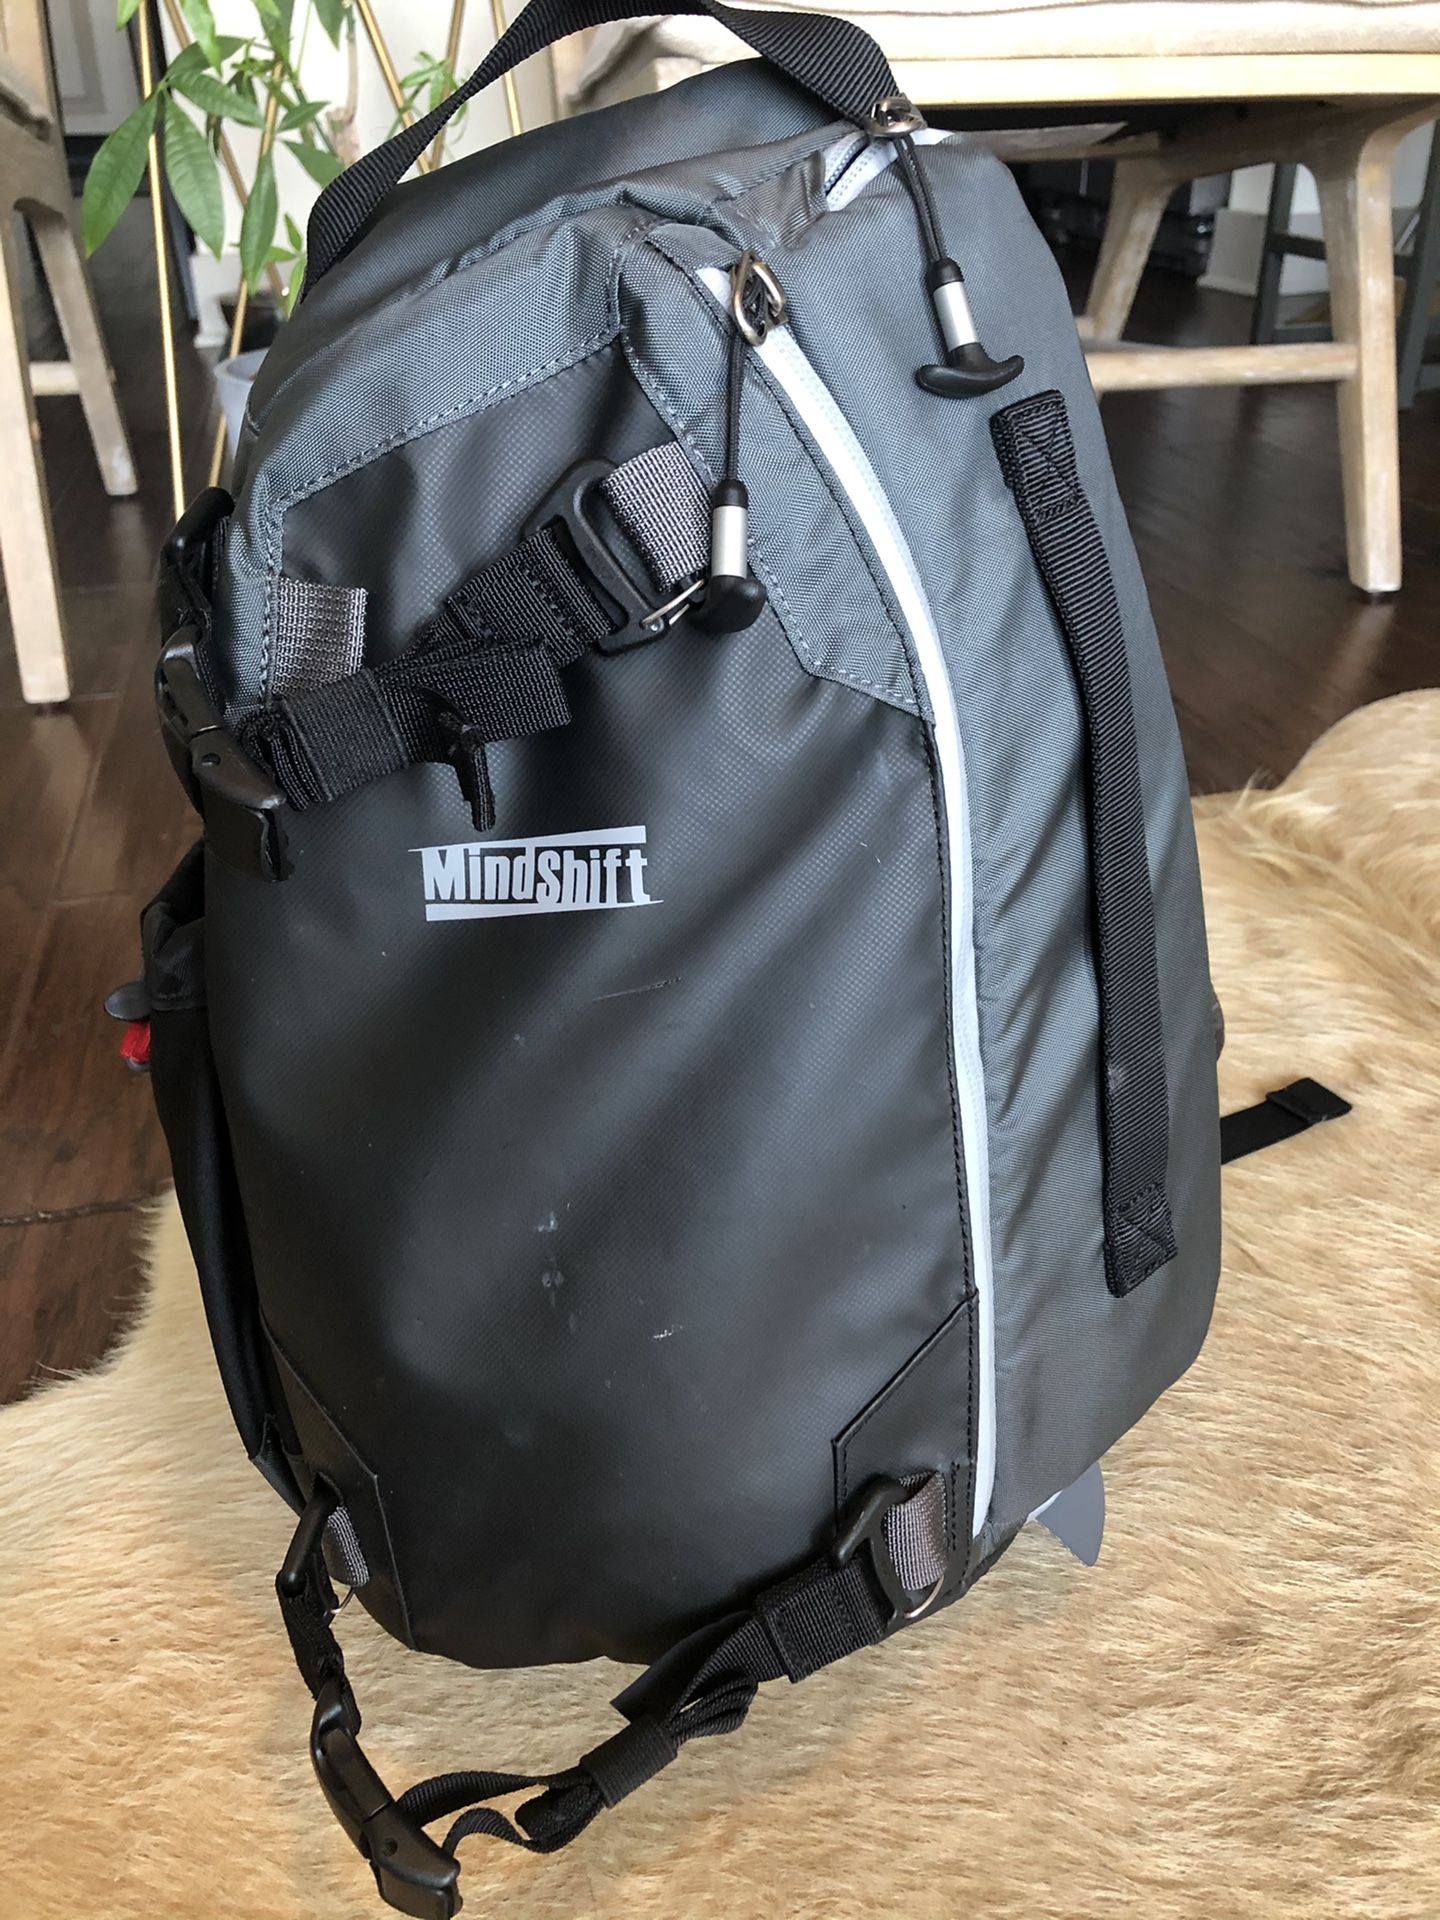 Mindshift Camera Backpack Sling Bag